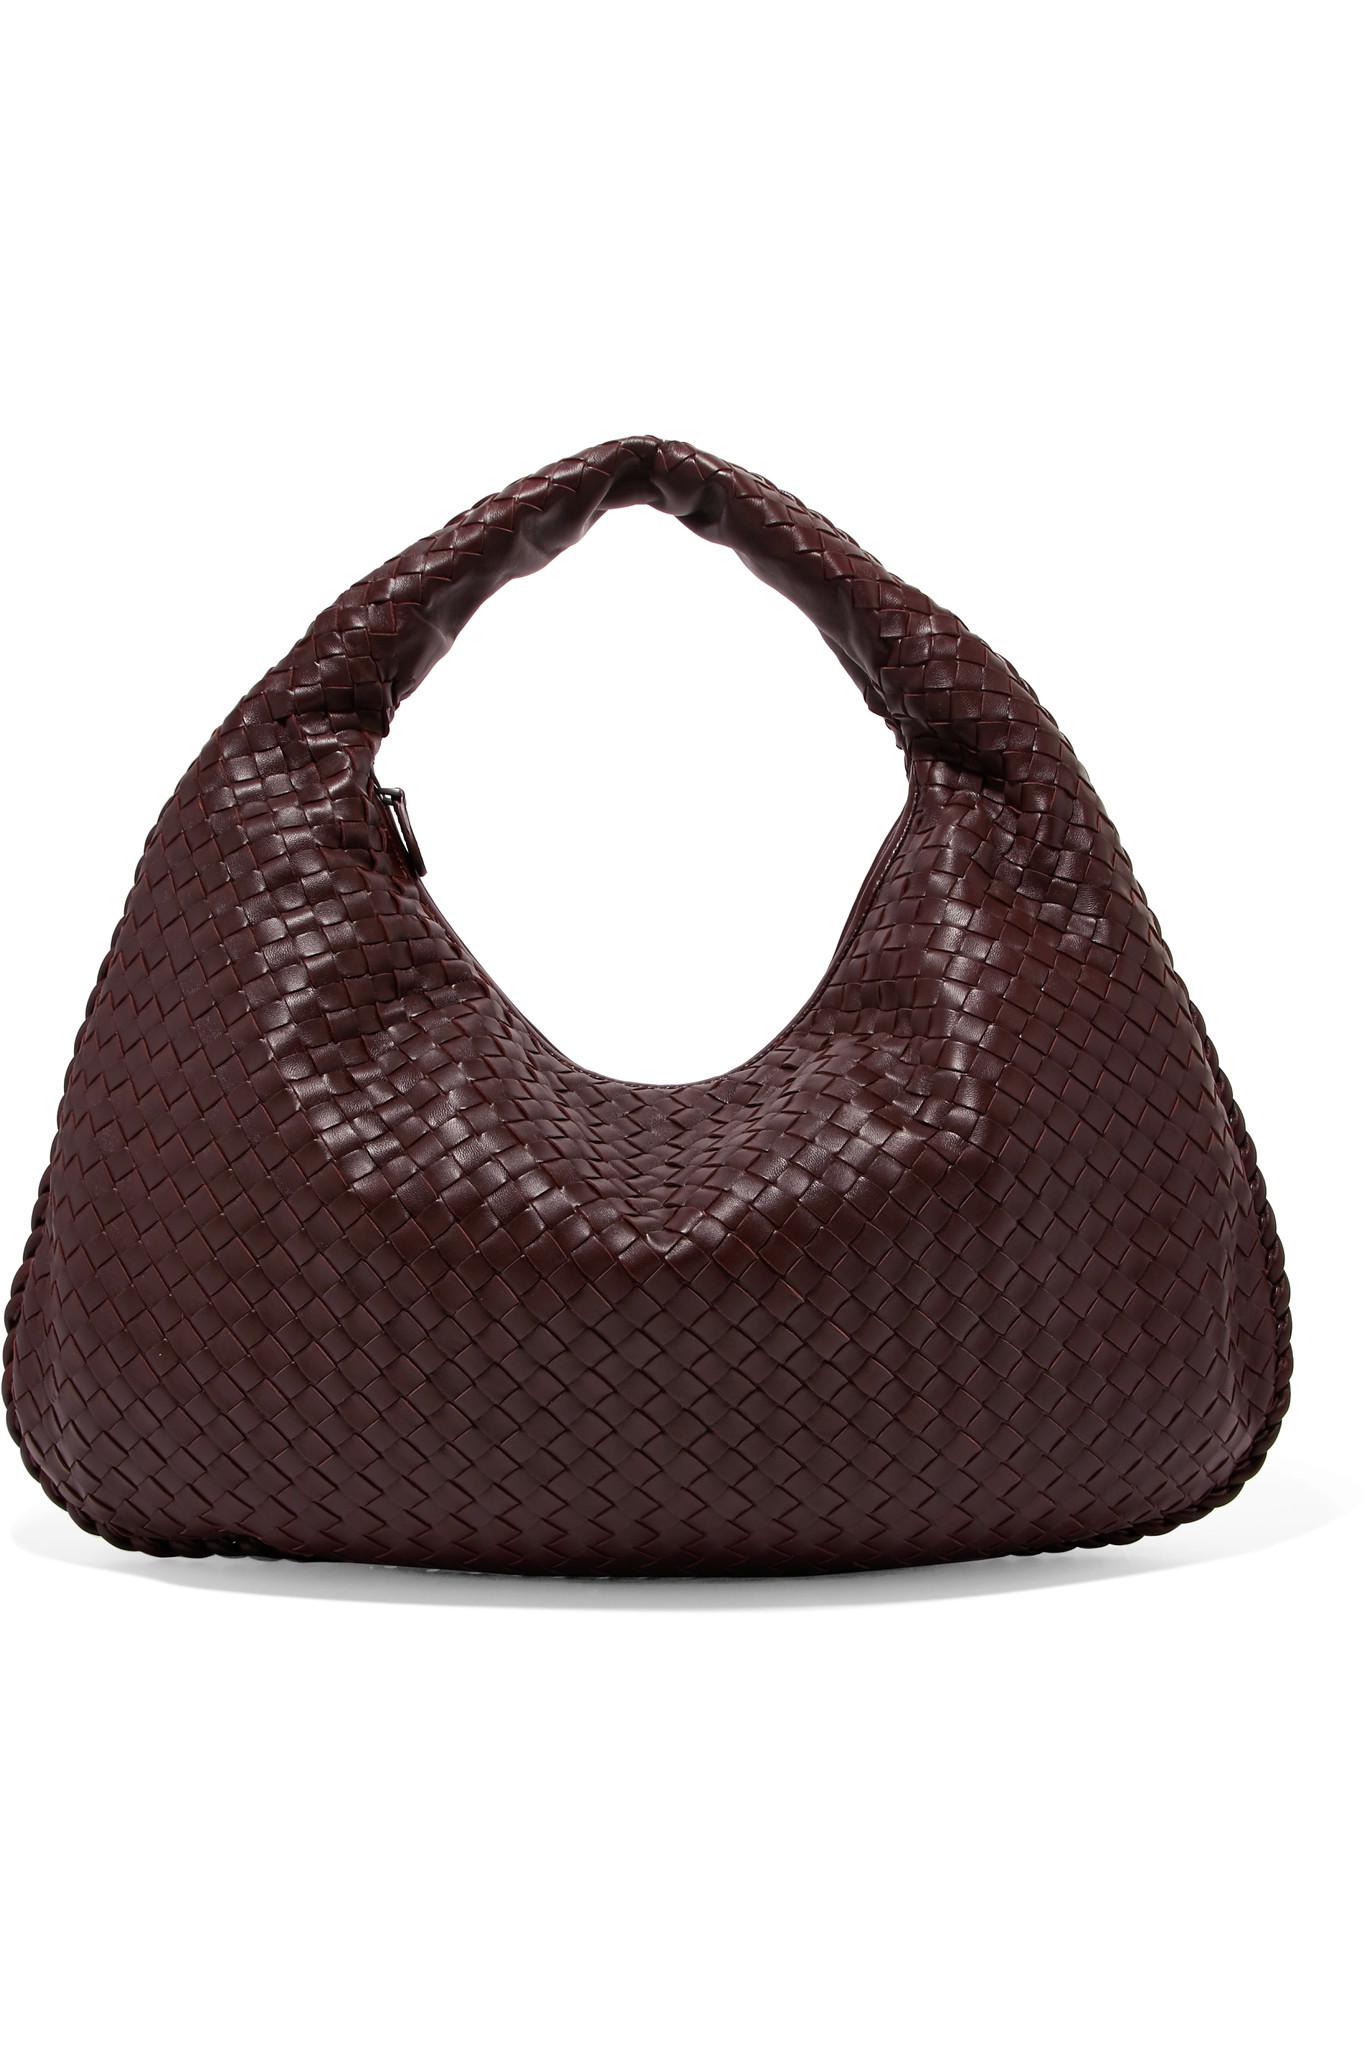 Lyst - Bottega veneta Hobo Large Intrecciato Leather Shoulder Bag in Brown